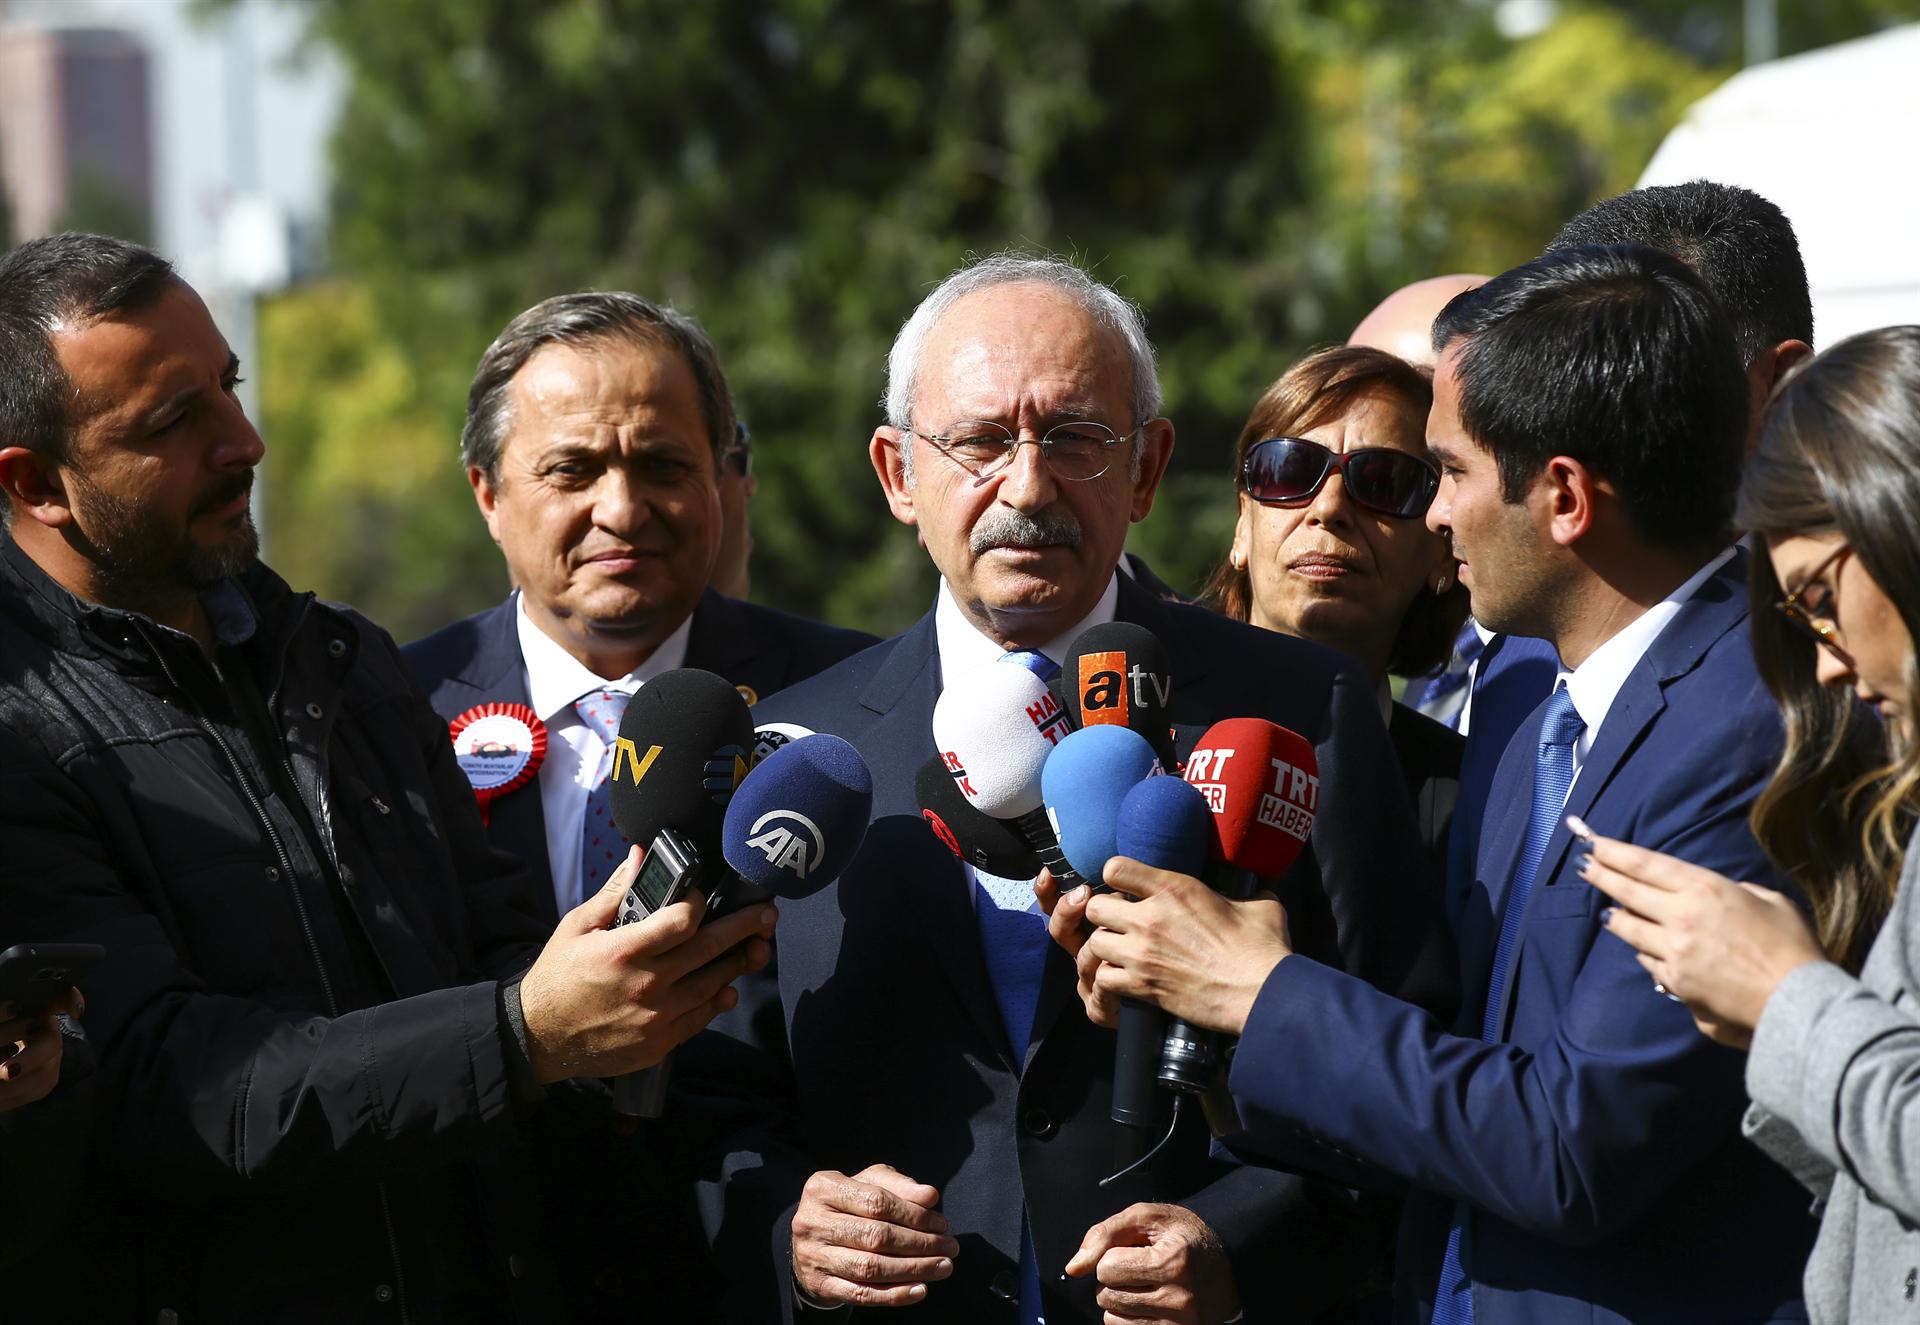 CHP head slams Erdoğan over mayors’ resignation